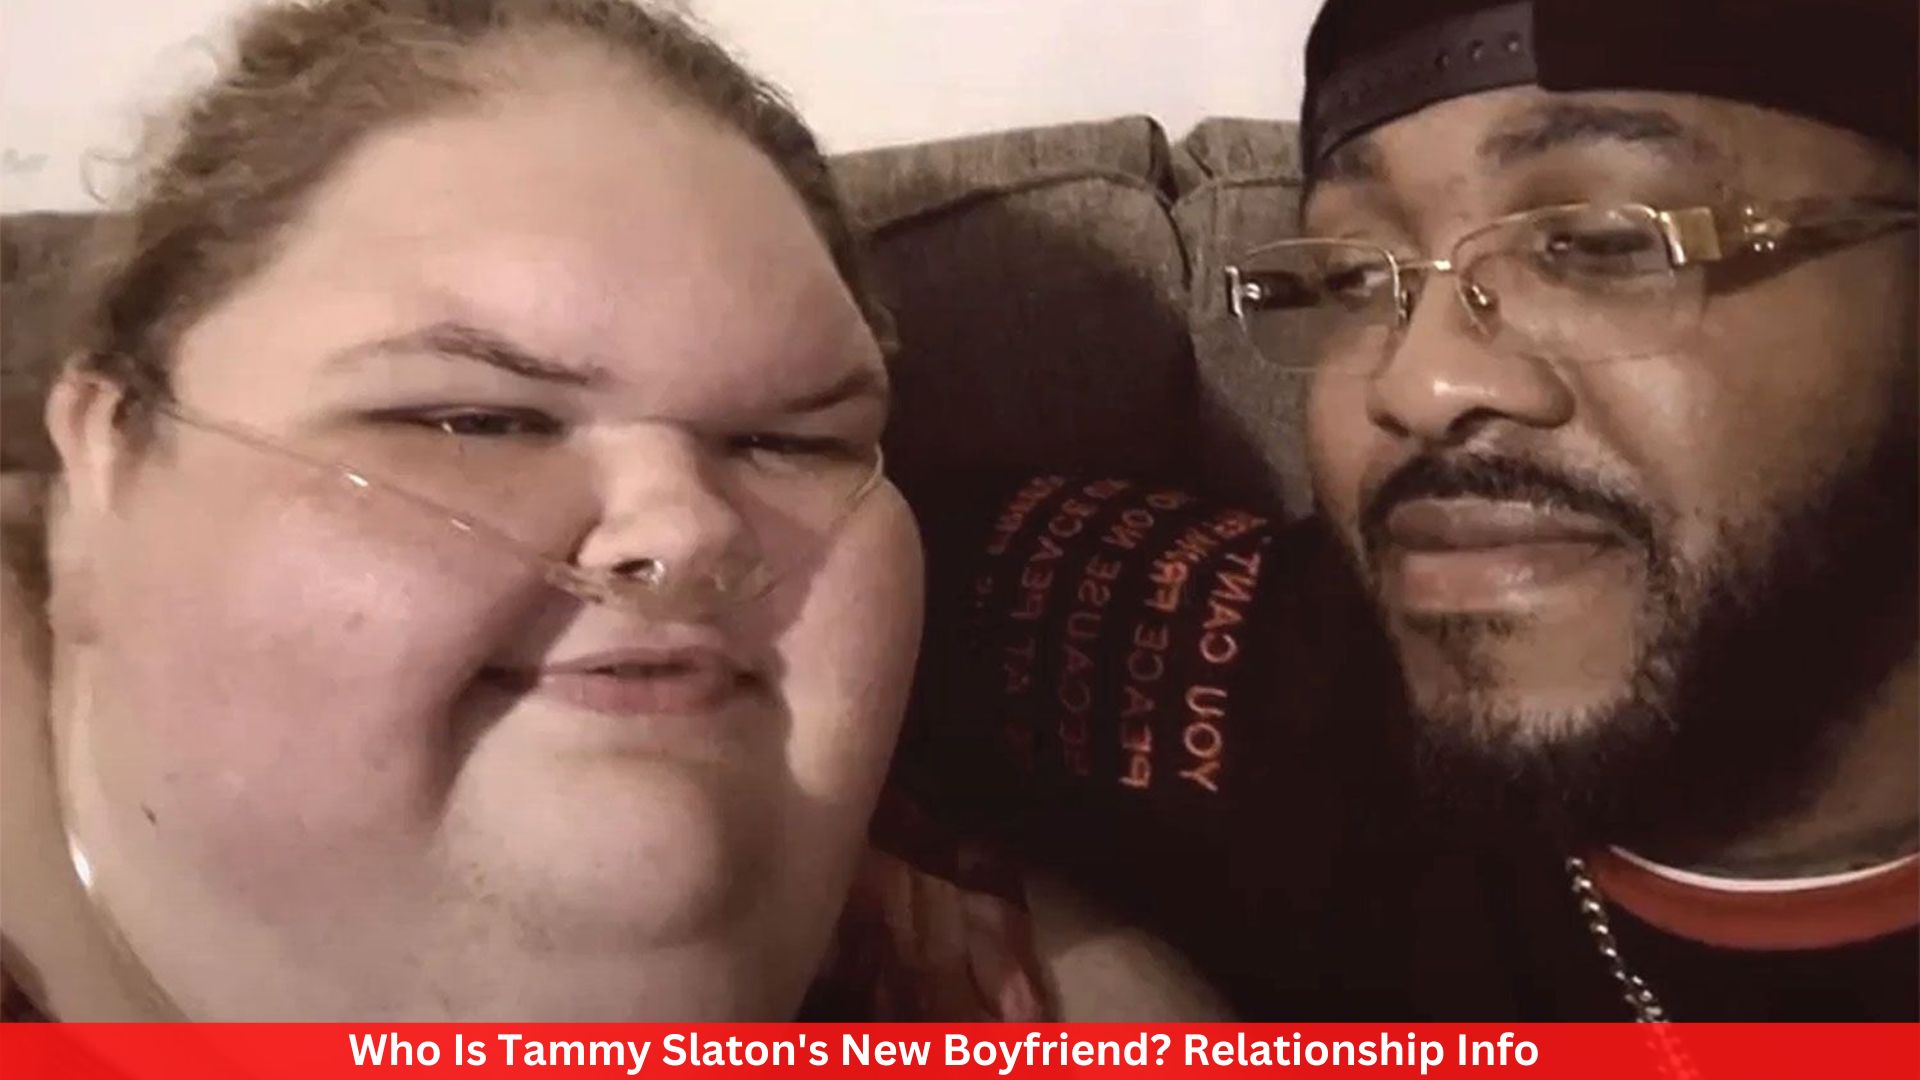 Who Is Tammy Slaton's New Boyfriend? Relationship Info